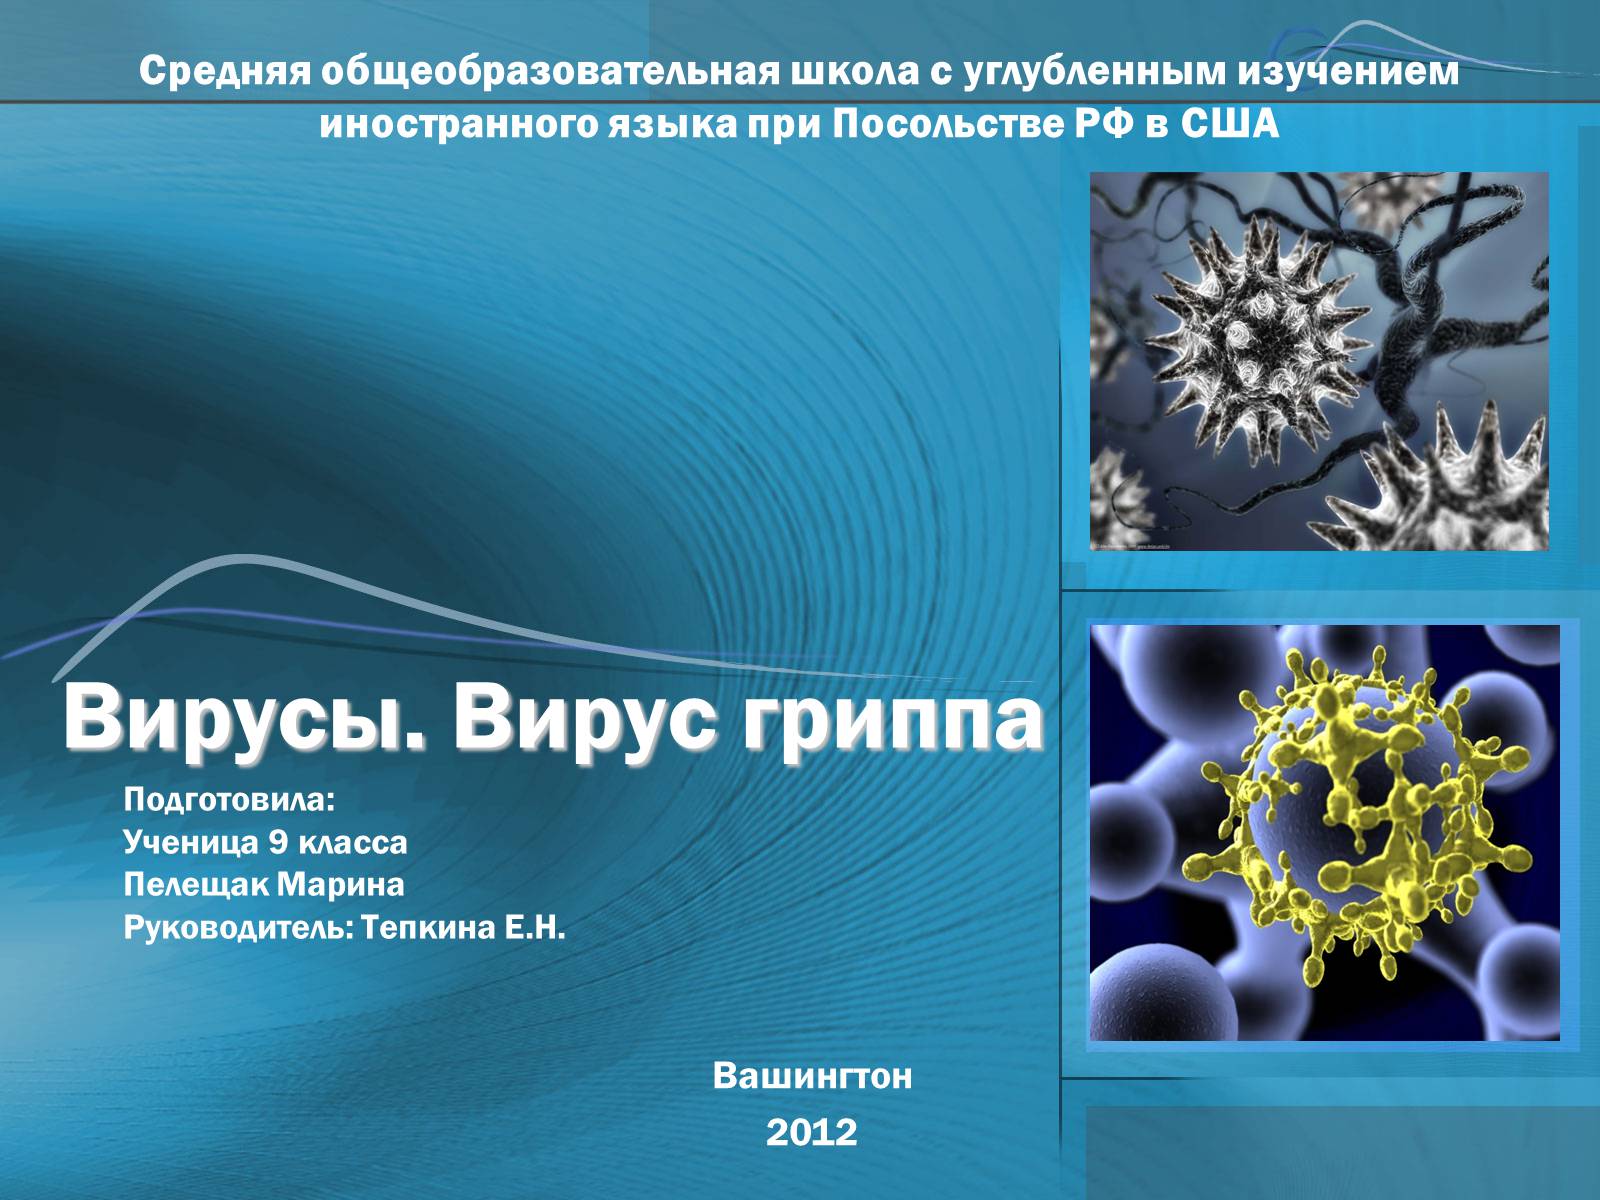 Вирус гриппа анализ. Презентация на тему вирусы. Вирус гриппа. Вирус гриппа презентация. Изучение вирусов.